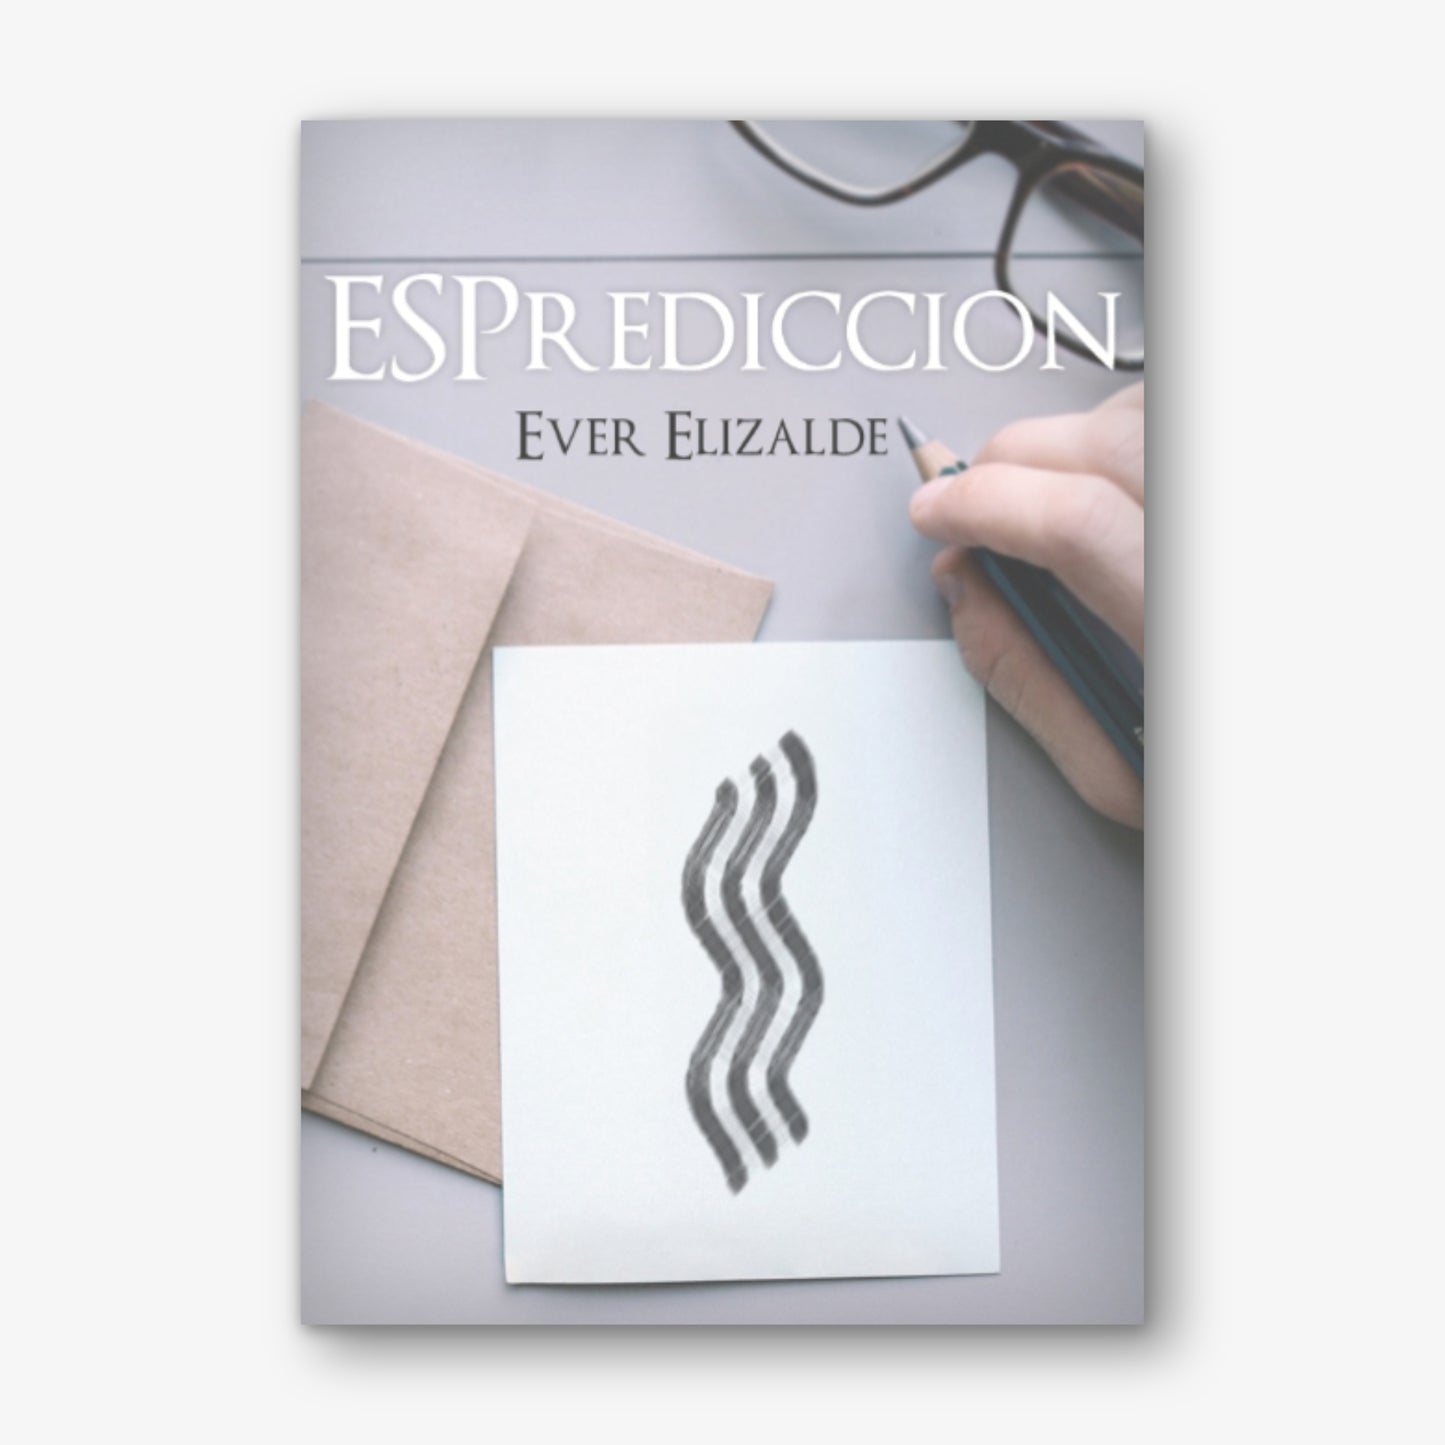 ESPrediccion by Ever Elizalde